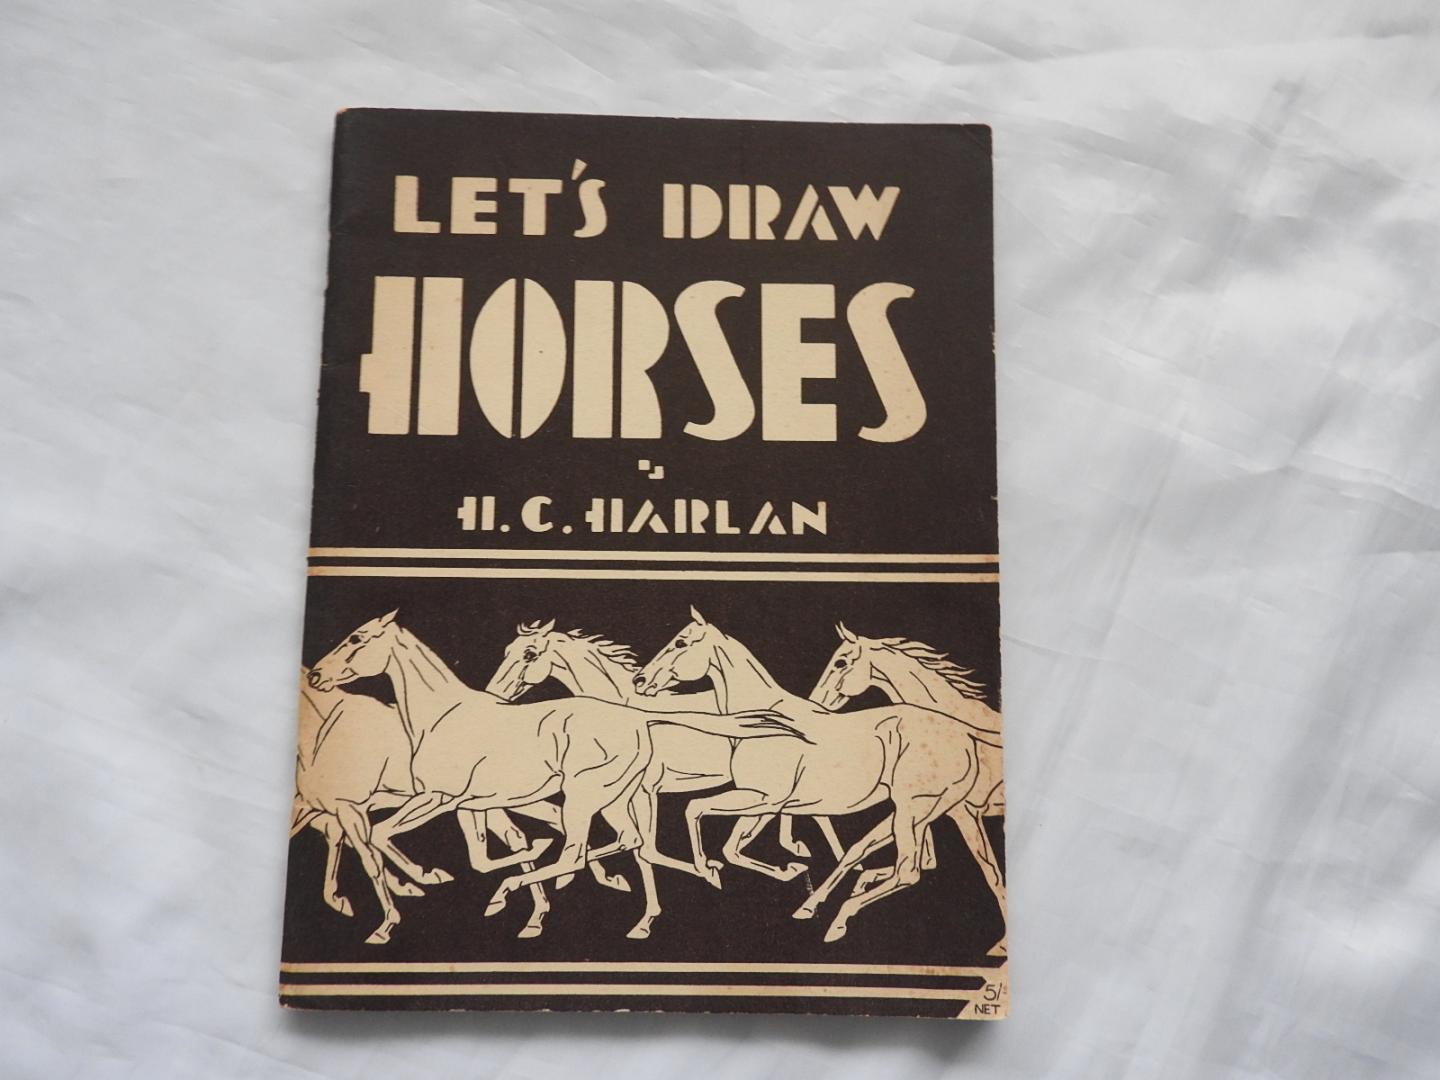 Harold Coffman Harlan H.C. - Let's draw horses